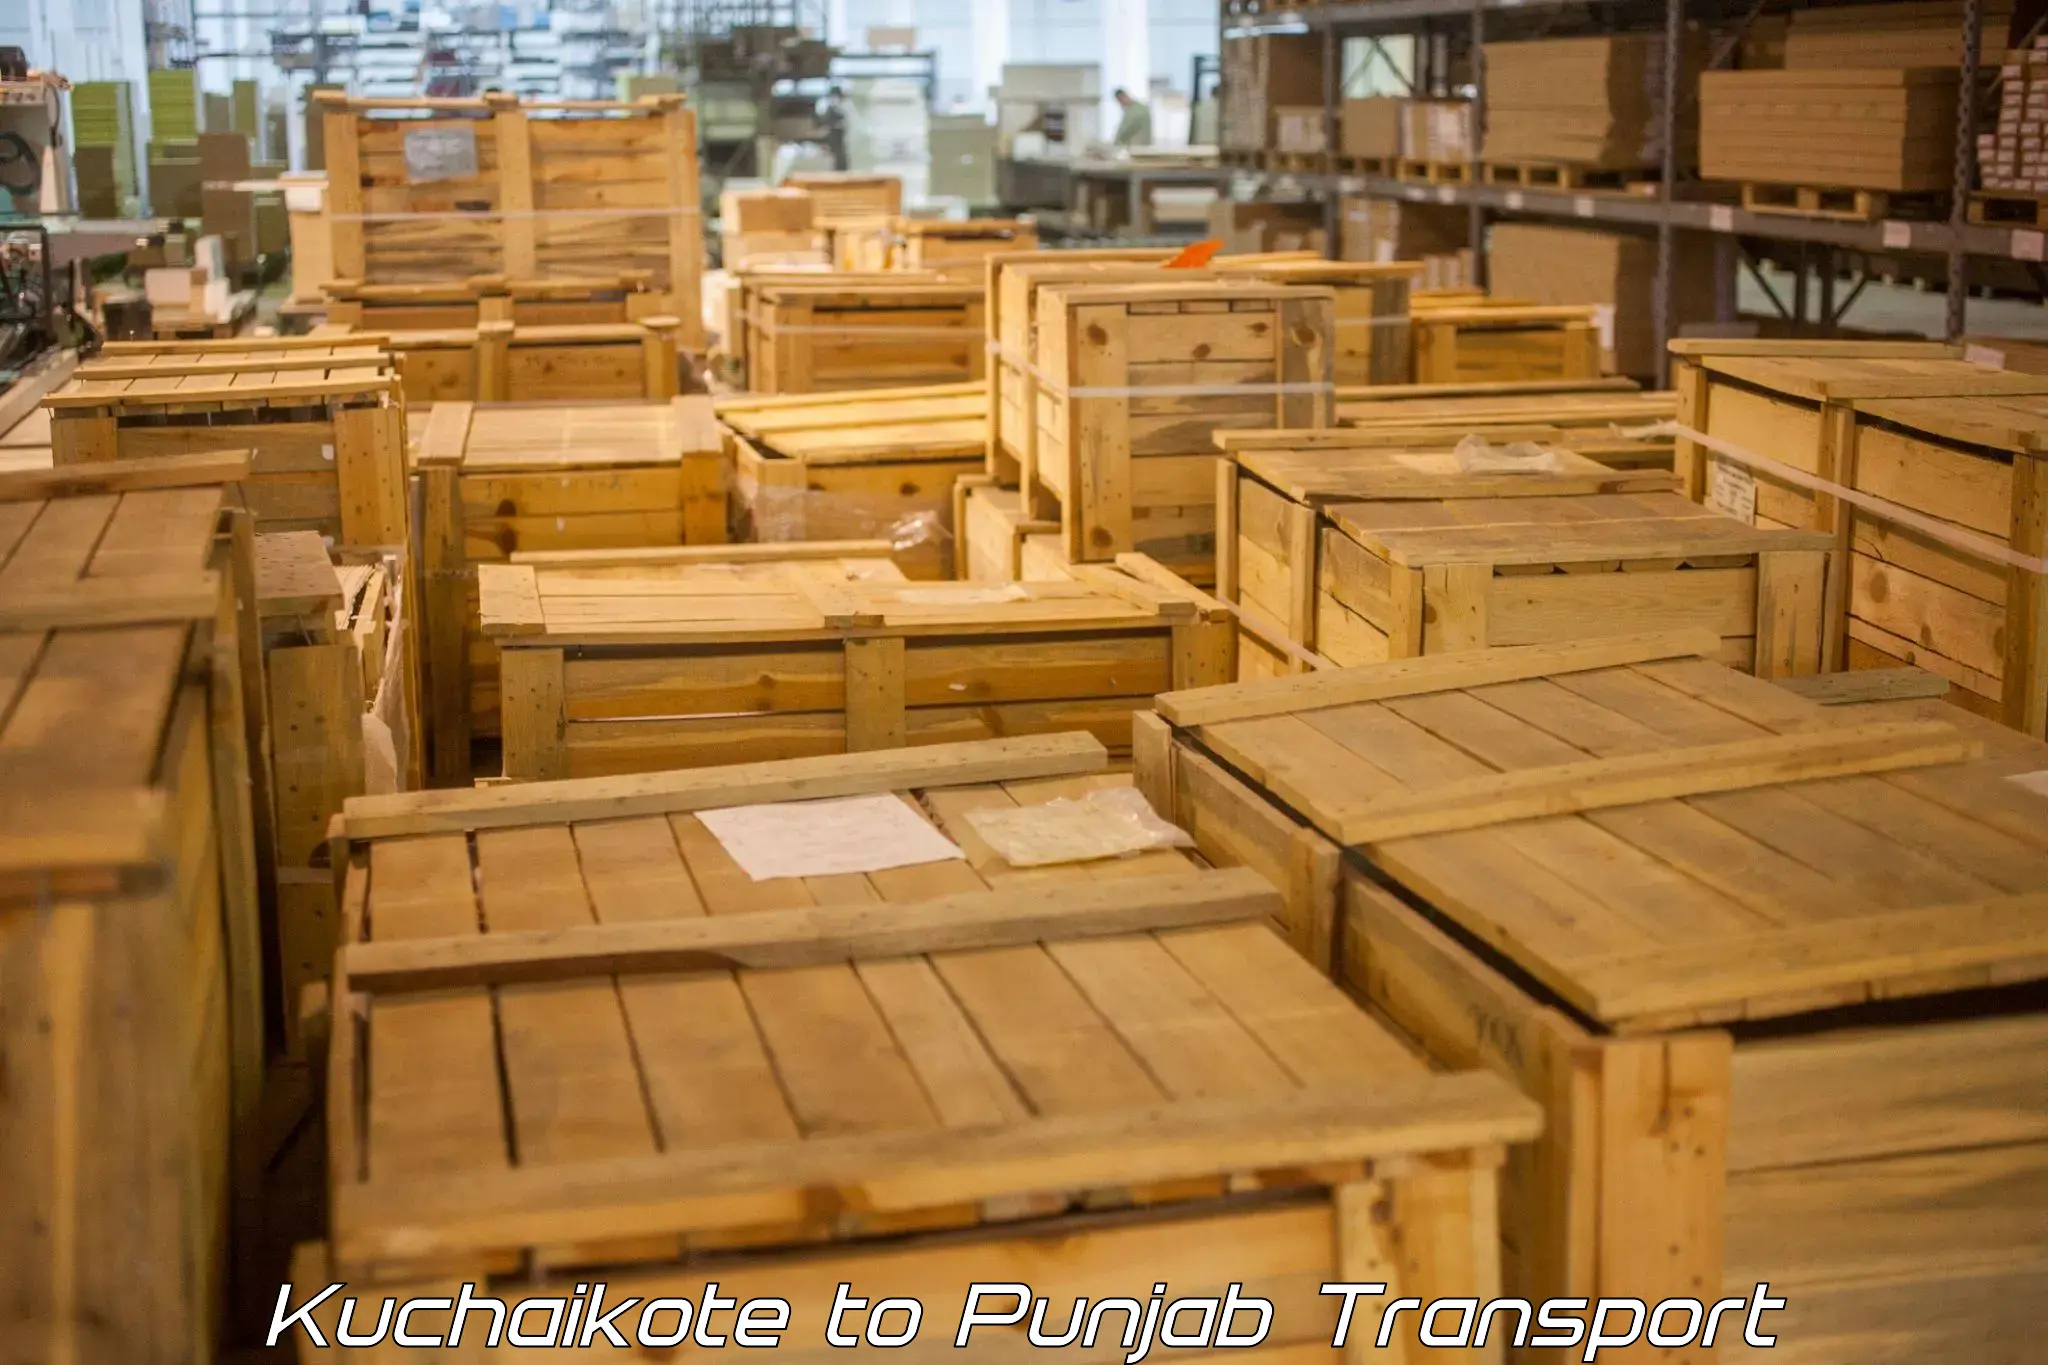 Parcel transport services Kuchaikote to Rupnagar